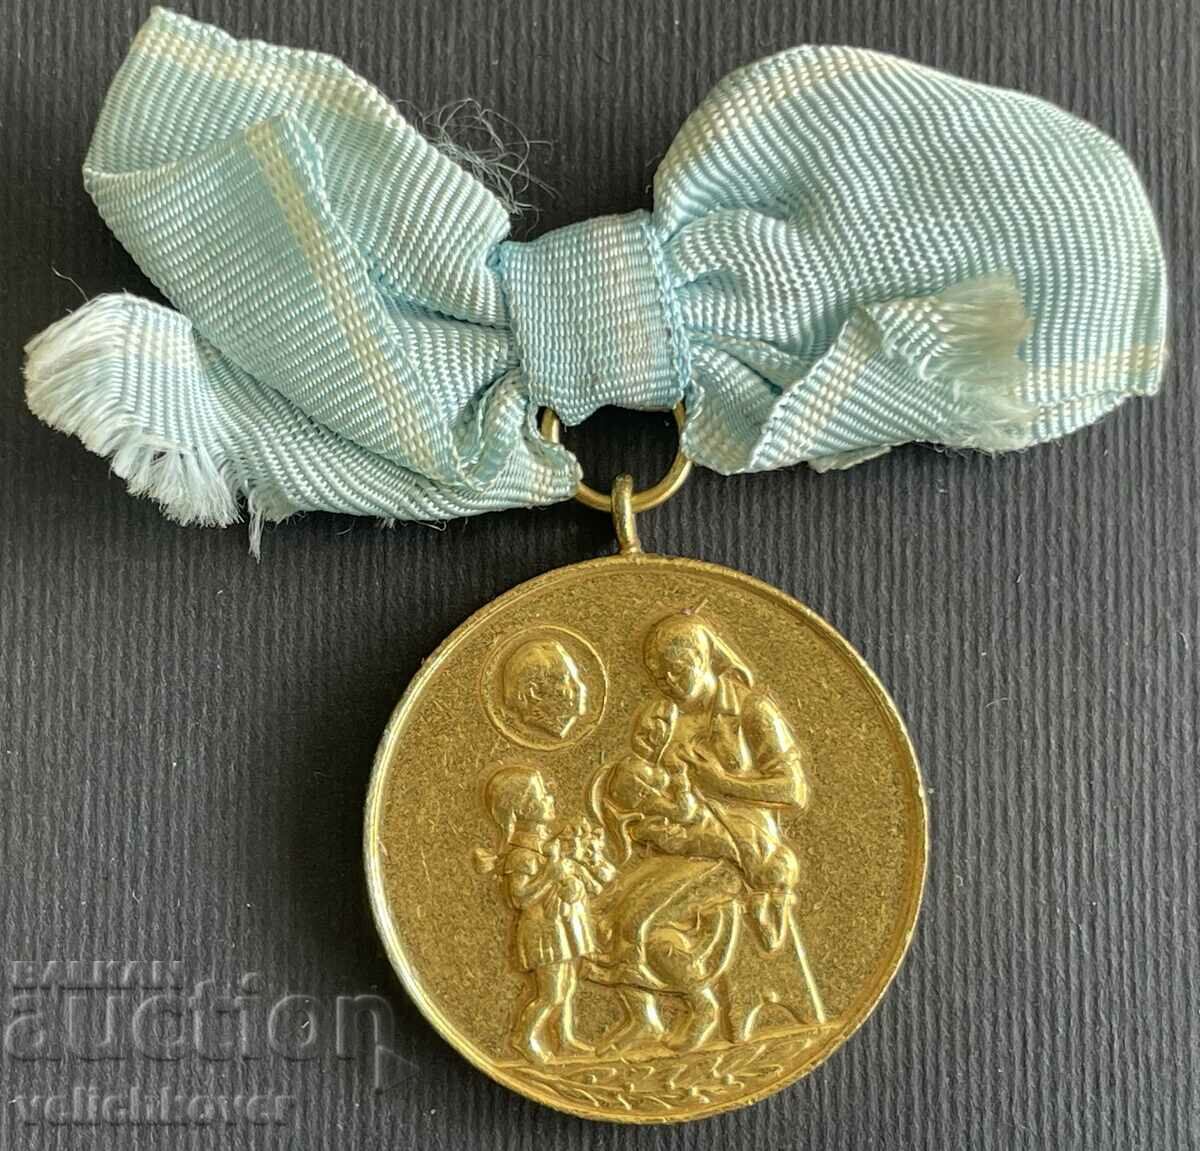 35219 Bulgaria medalie pentru Maternitate de aur de gradul I anii 50